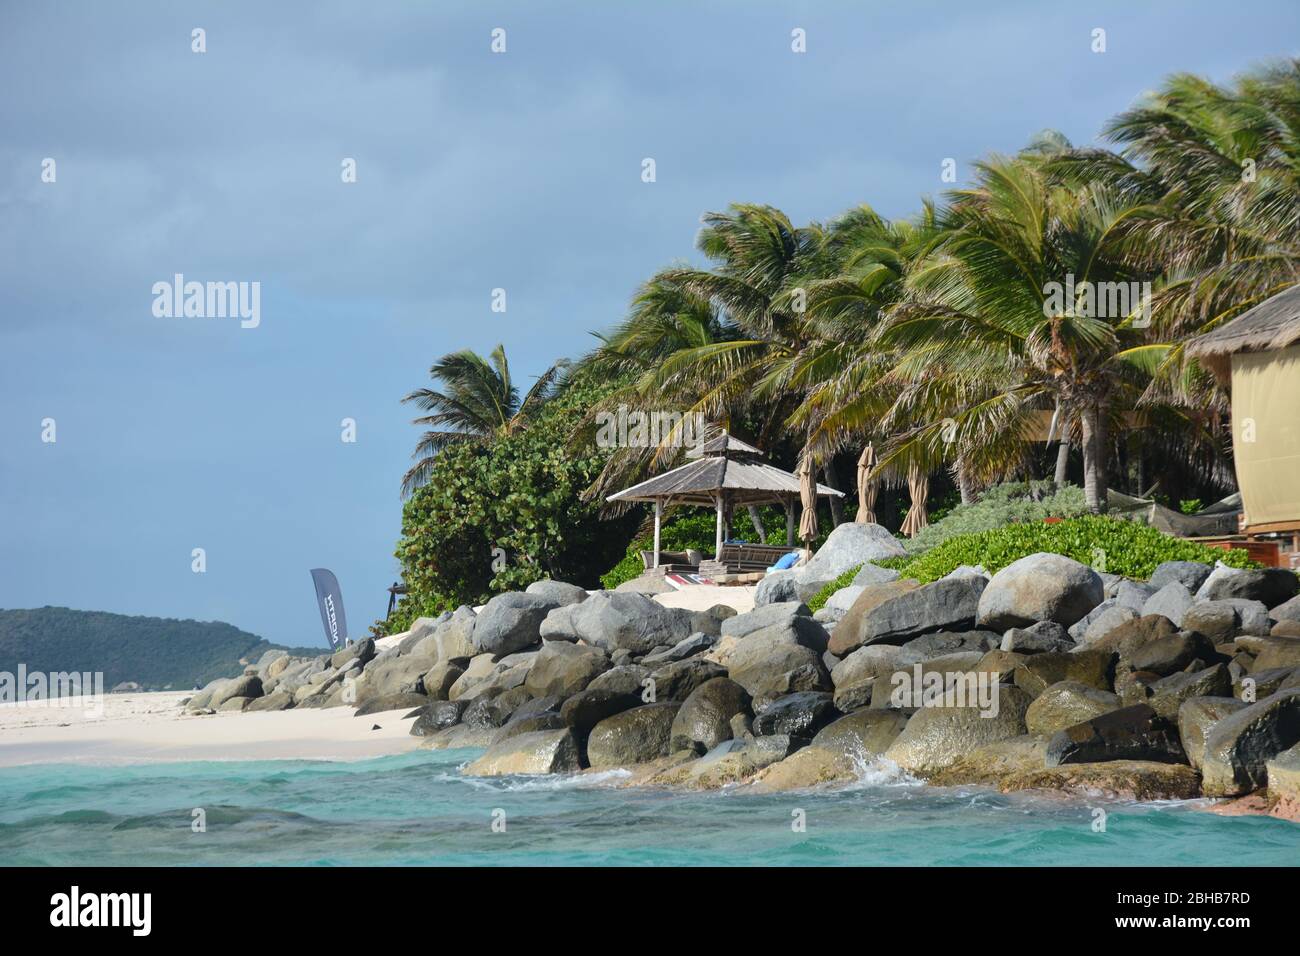 La plage de Necker Island, une île privée des Caraïbes appartenant à Richard Branson sous la marque Virgin Limited Edition. Banque D'Images